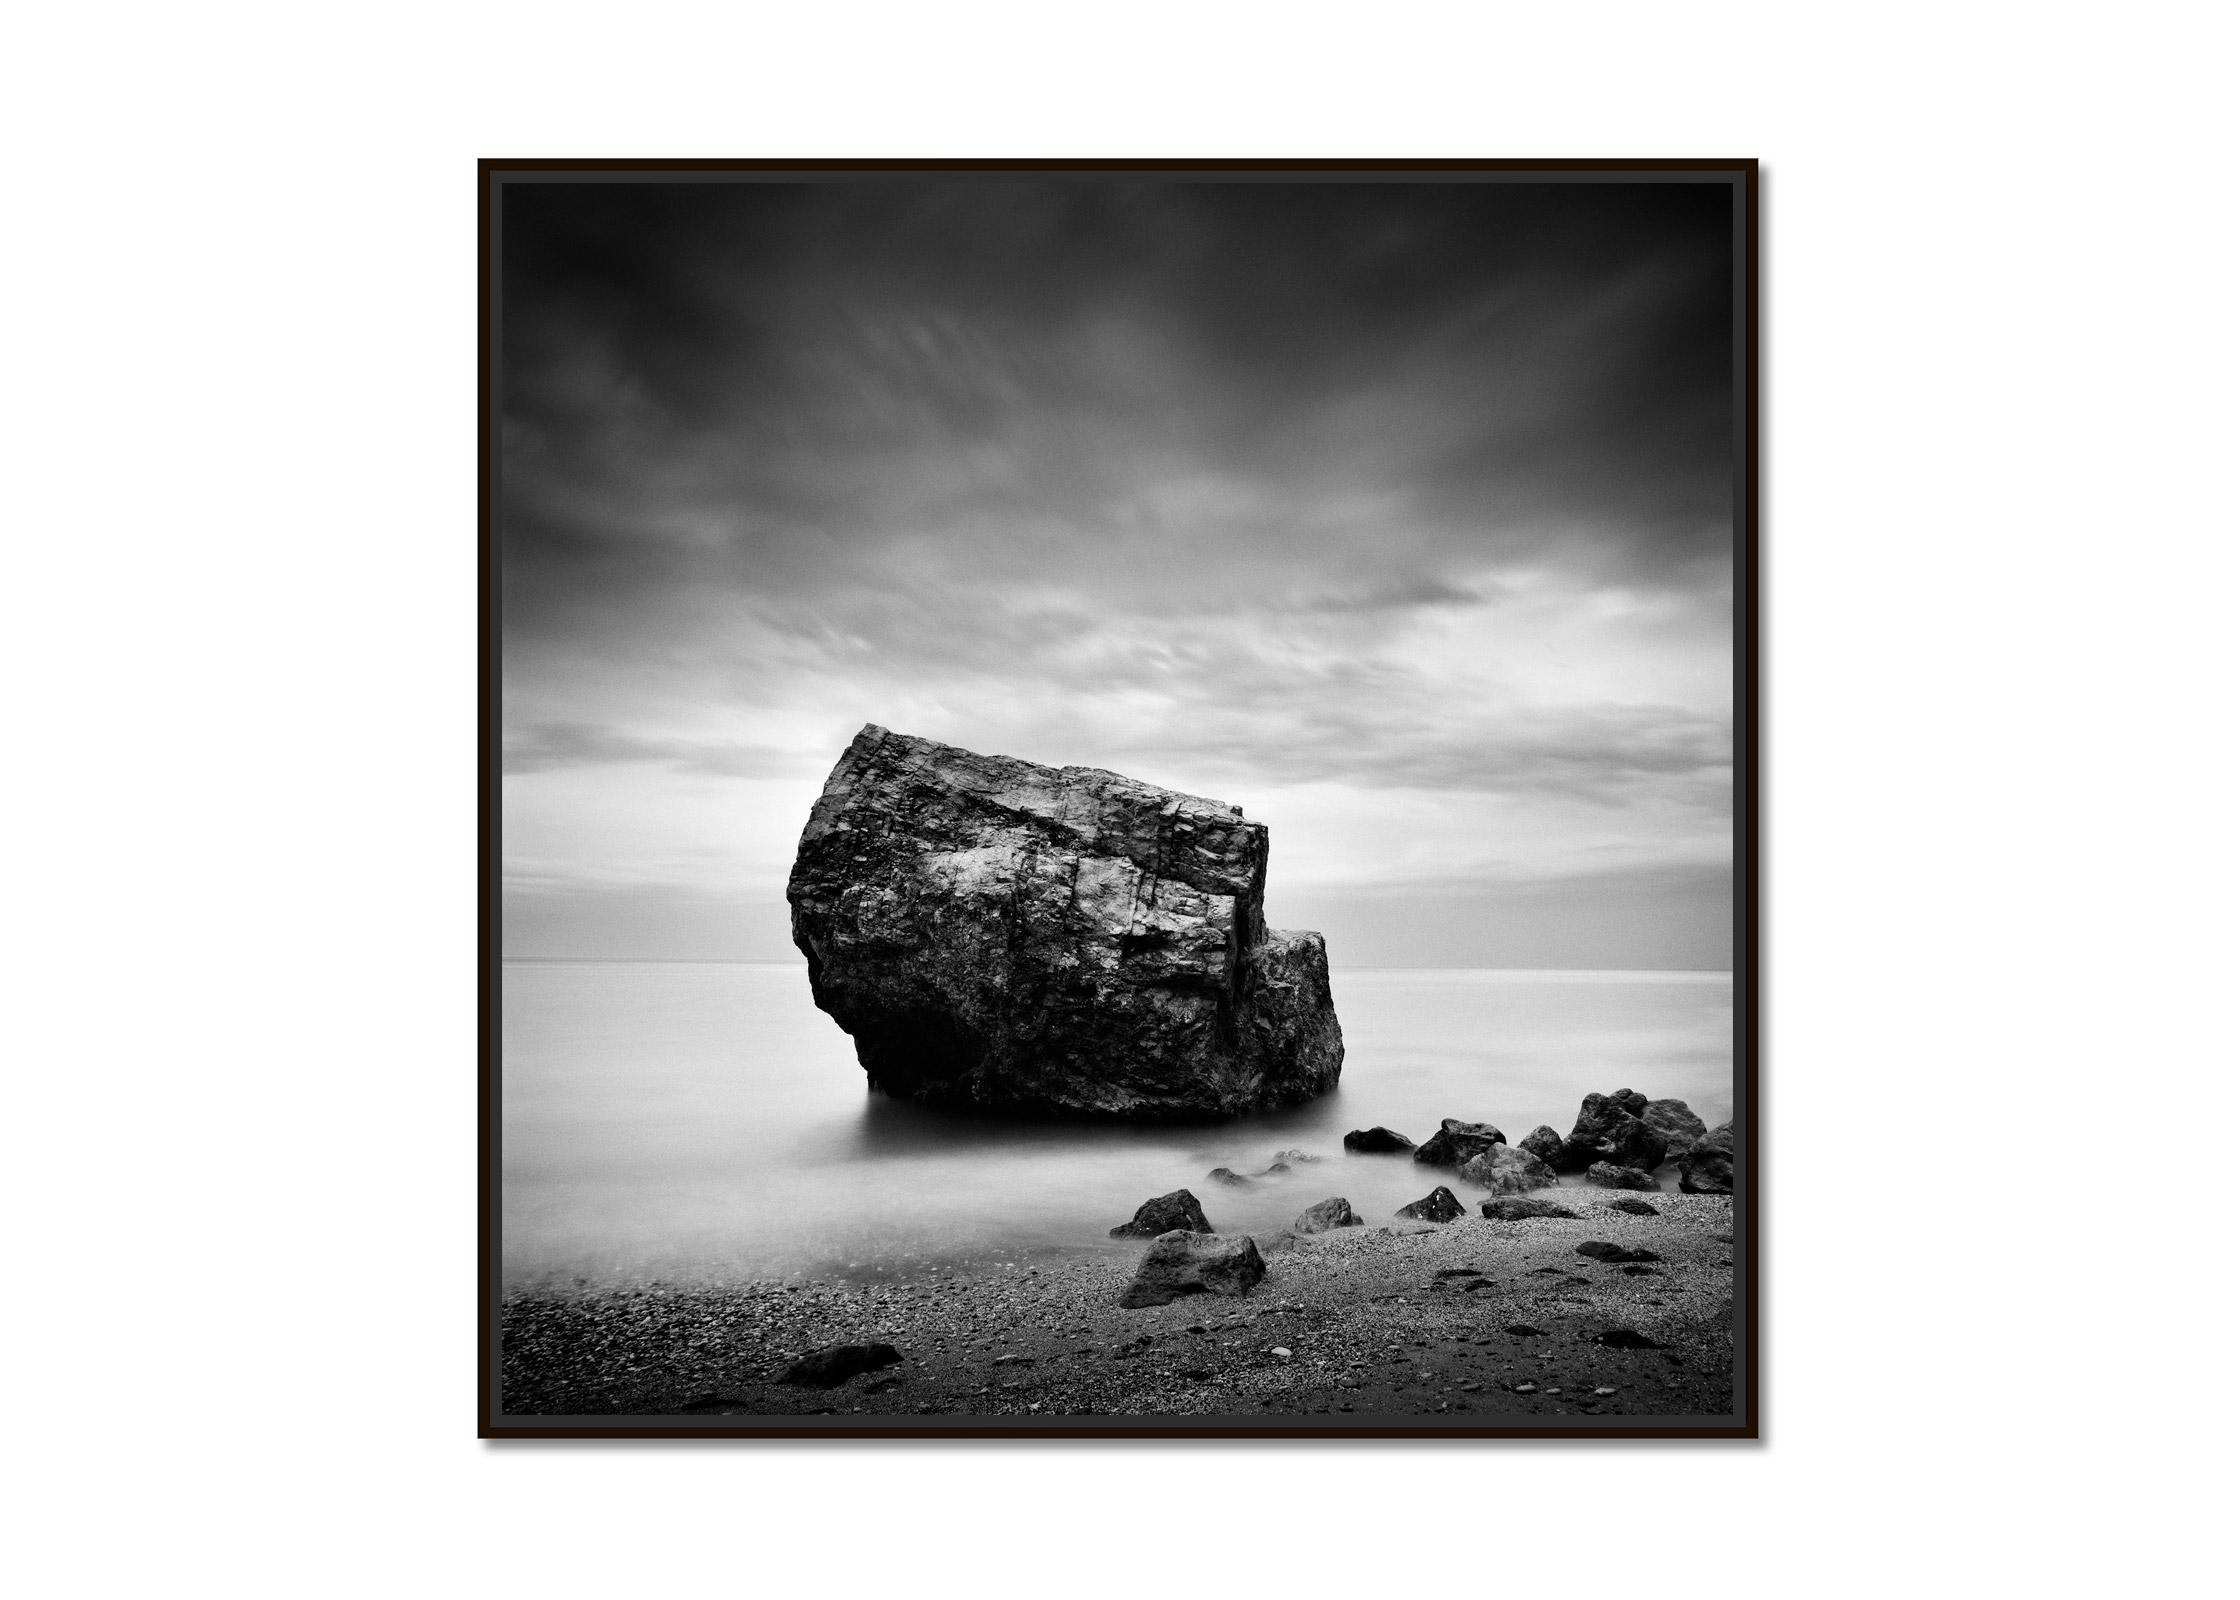 Great Rock, Beach, Espagne, photographie d'art en noir et blanc, paysage - Photograph de Gerald Berghammer